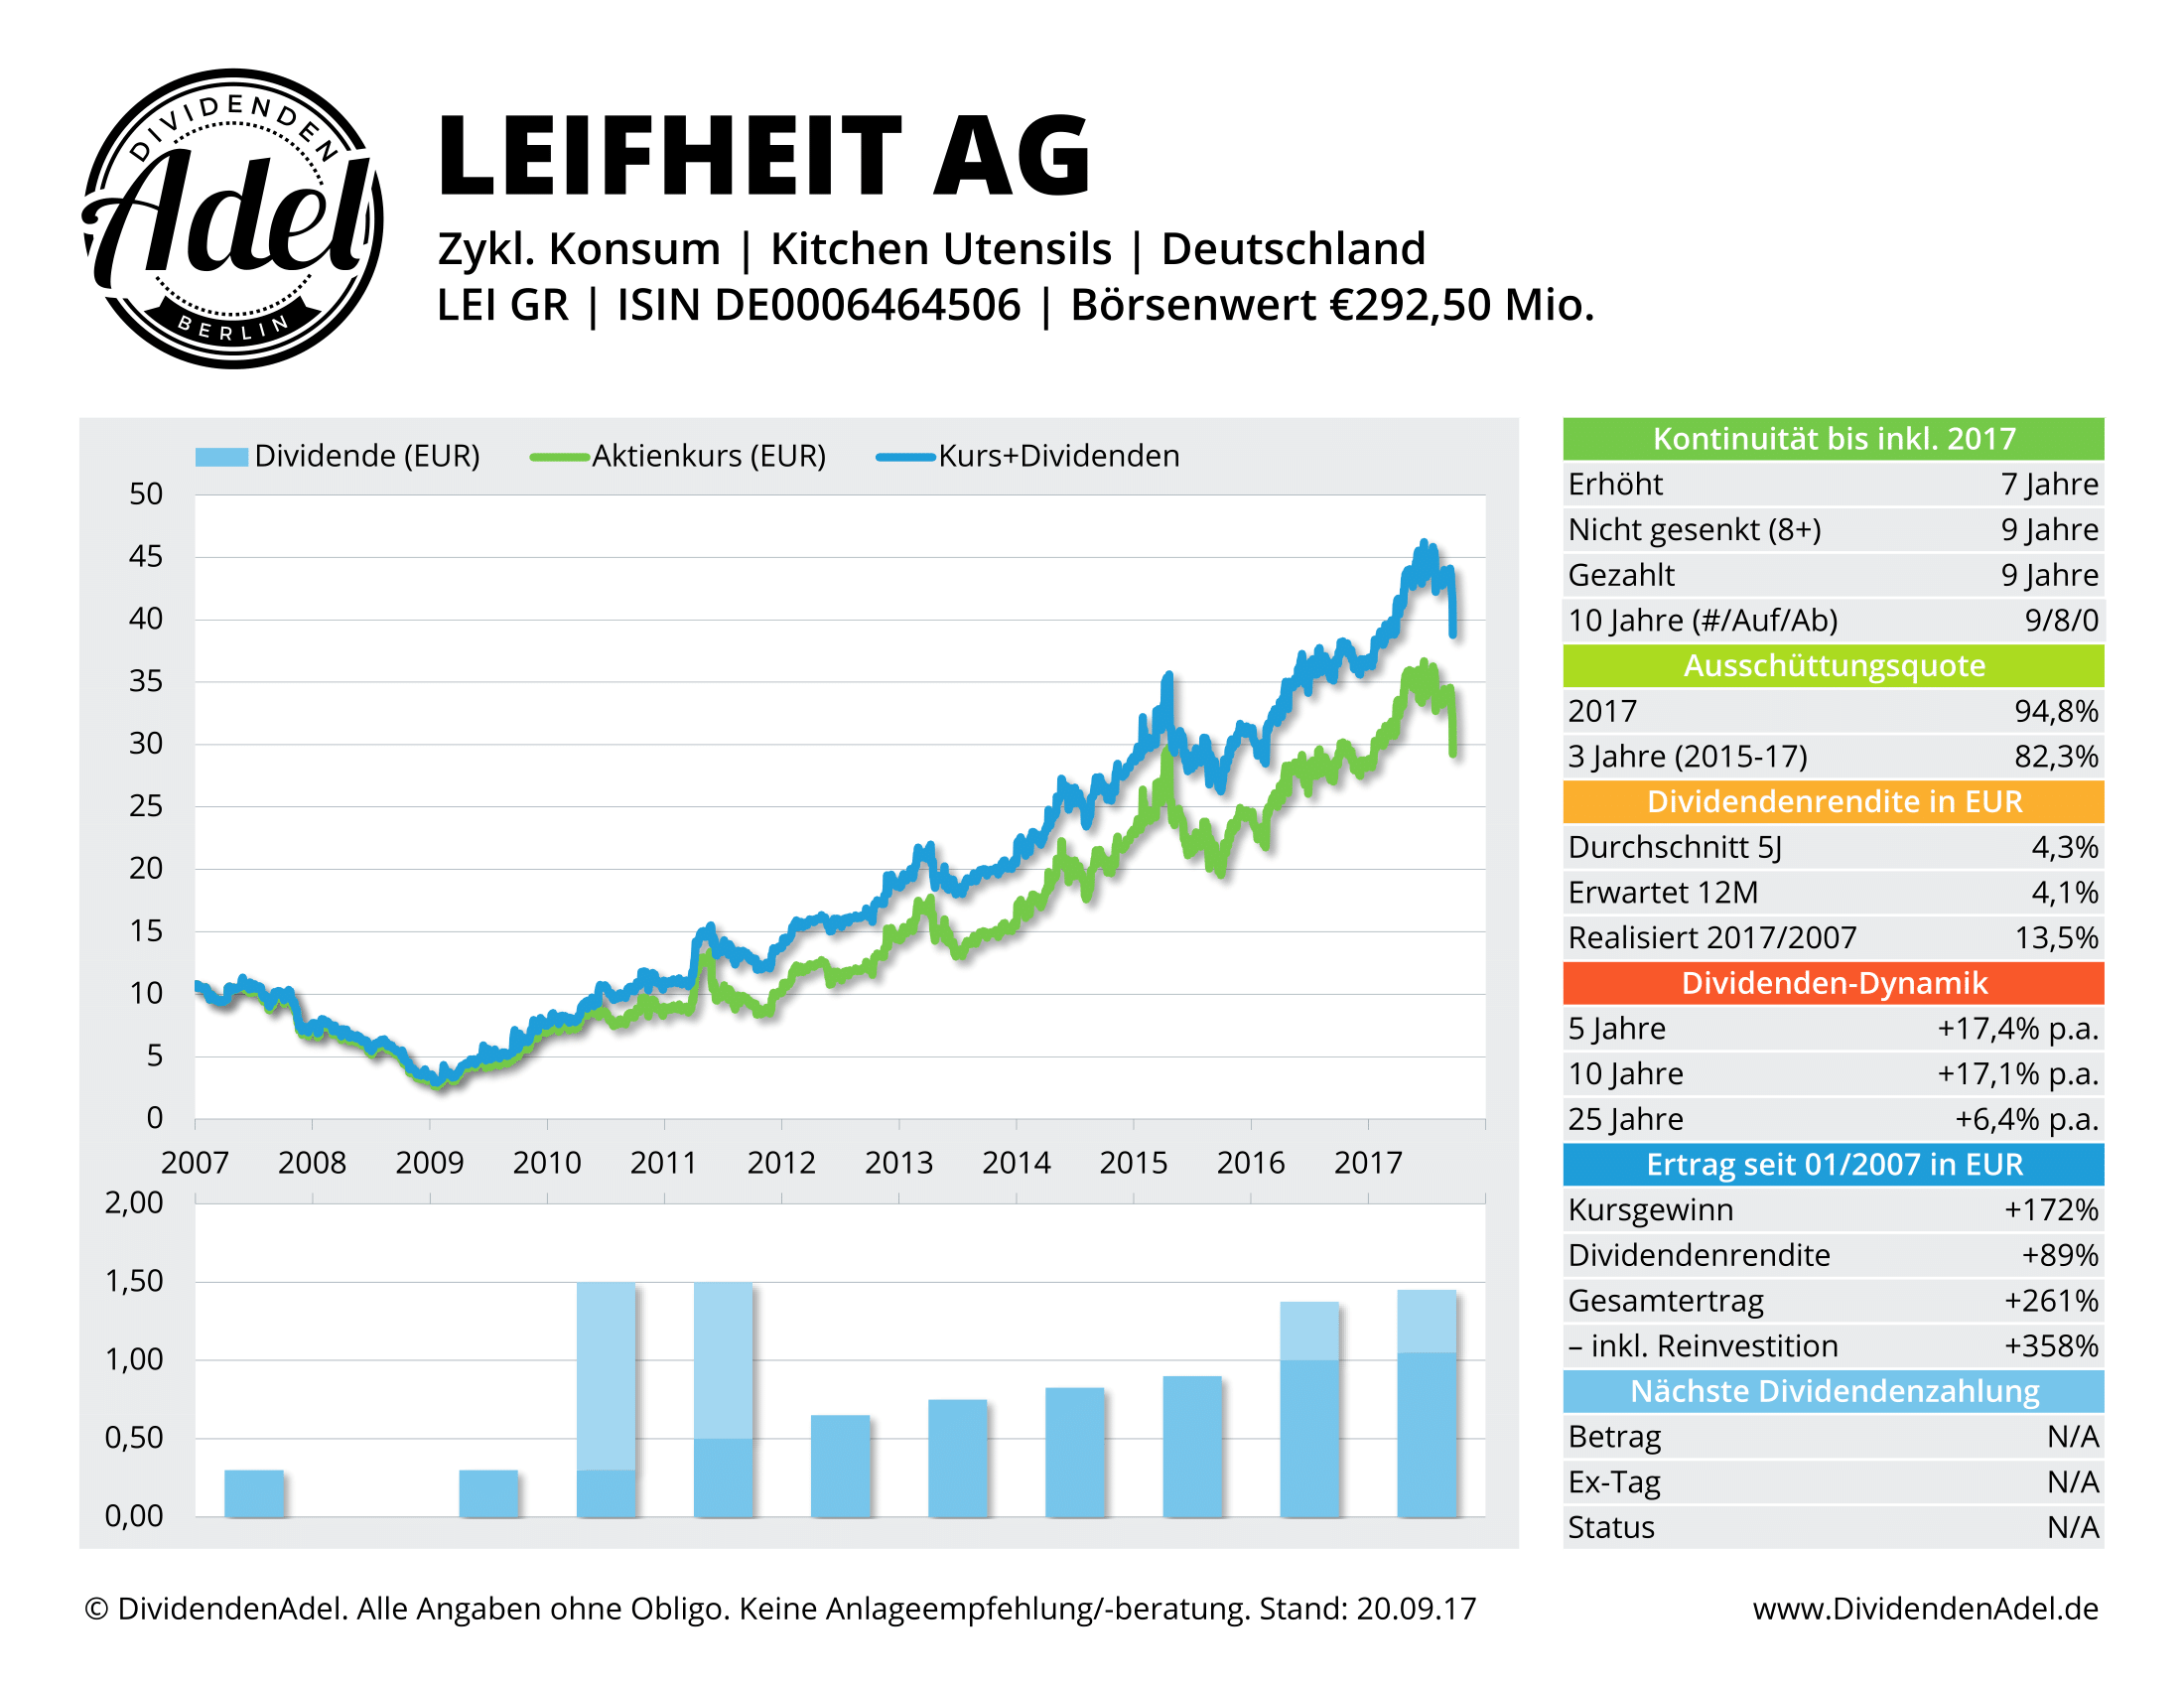 LEIFHEIT AG DividendenAdel-Profil